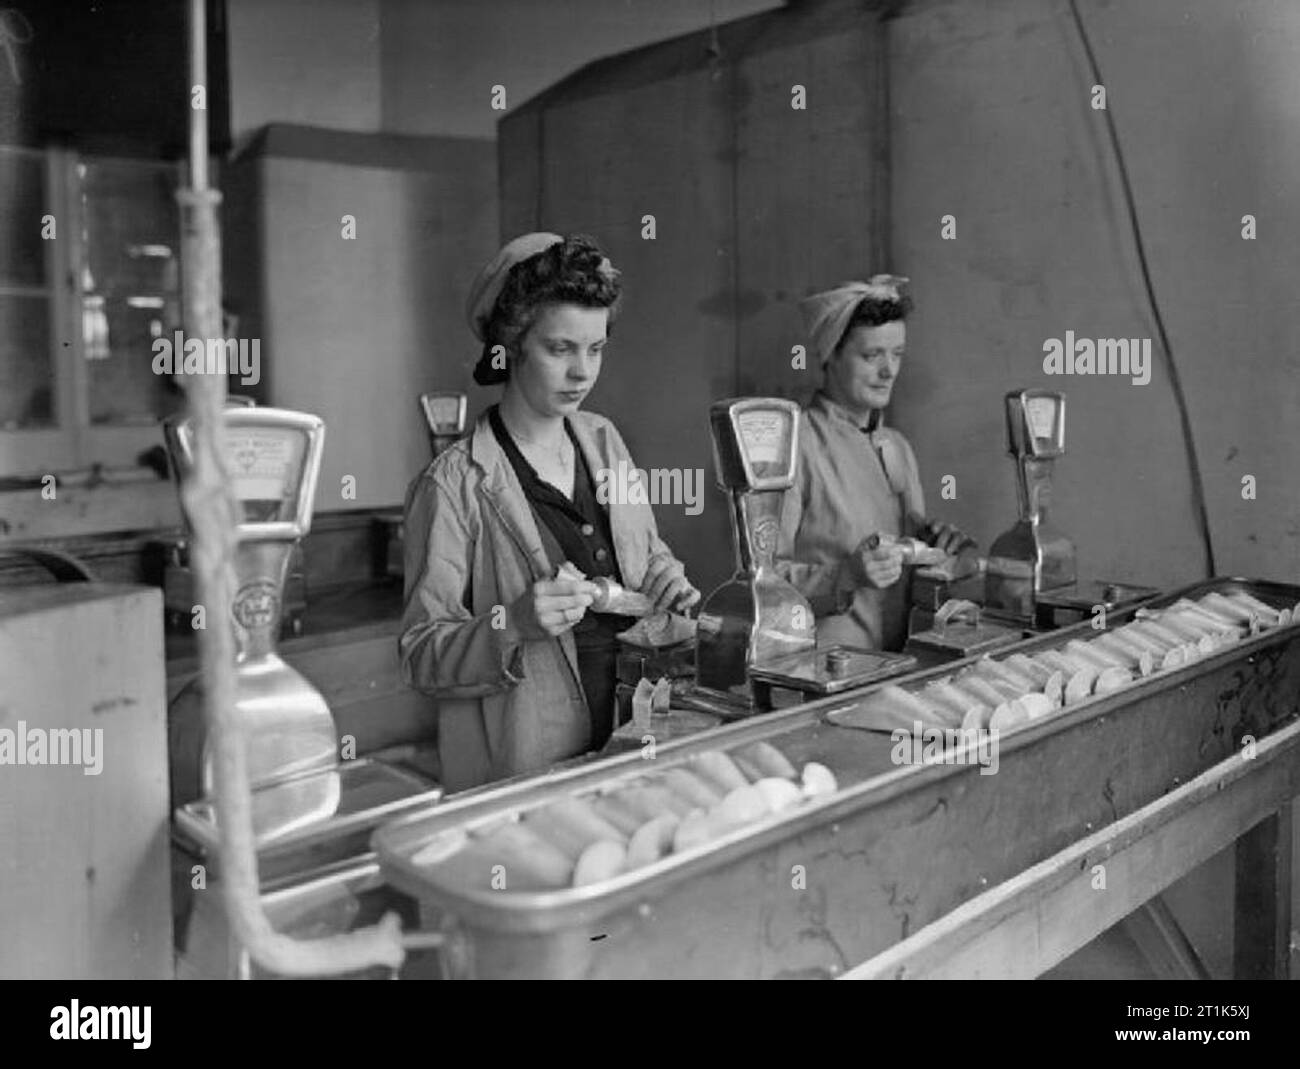 La vita al Royal Navy armamento Depot Priddy's Hard, Gosport, 25-30 luglio 1944 a RNAD Priddy's Hard, Gosport, Gladys Mingay, di età compresa tra i 19 e Gladys Cox, 39 anni, pesatura esplosivo RDX per il riempimento di naval due gusci di cancelletto. Foto Stock